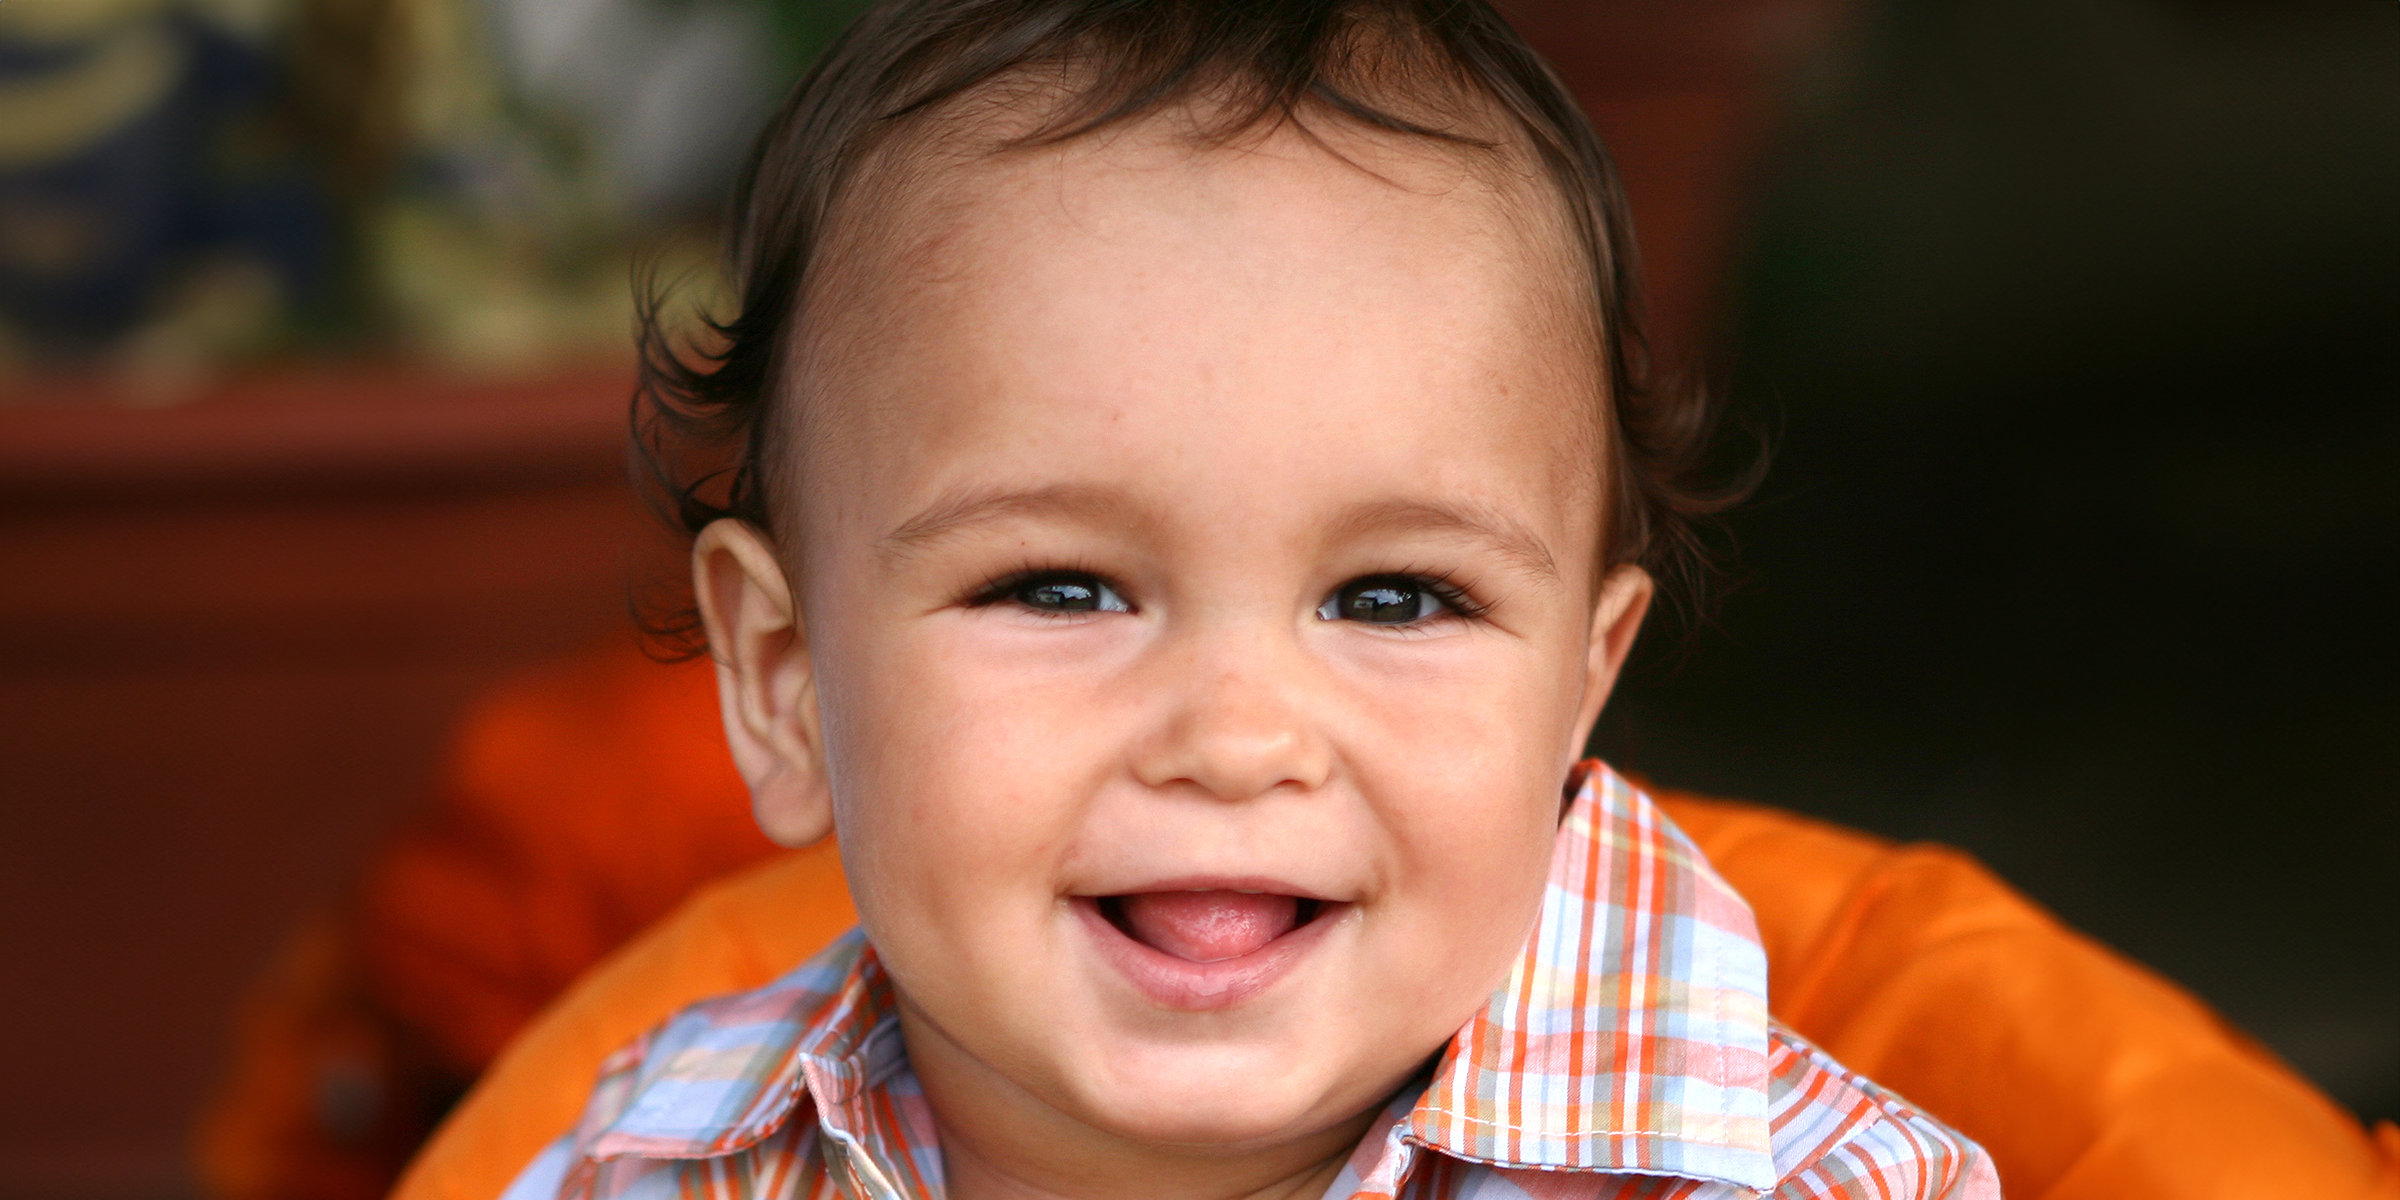 Un bambin aux cheveux foncés | Source : Shutterstock